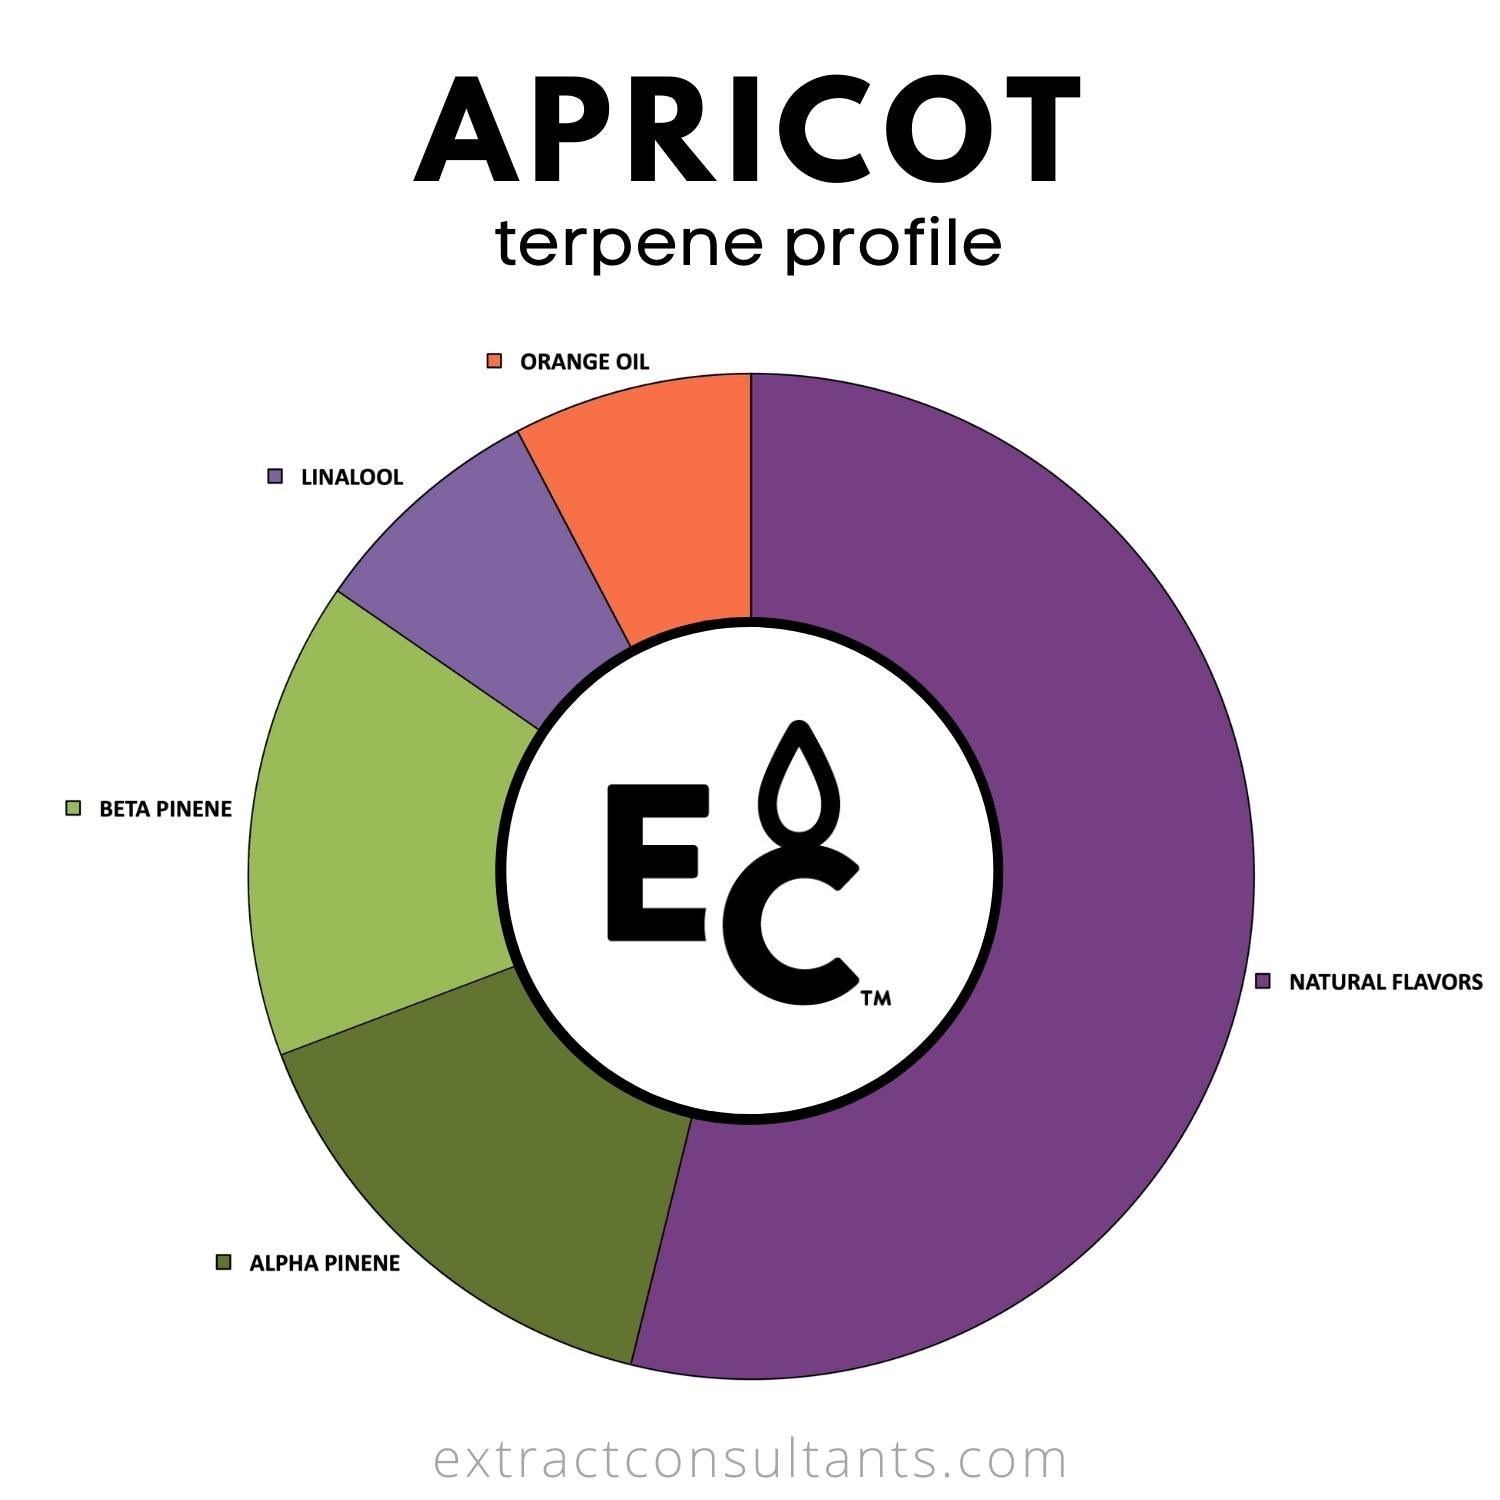 apricot terpene profile